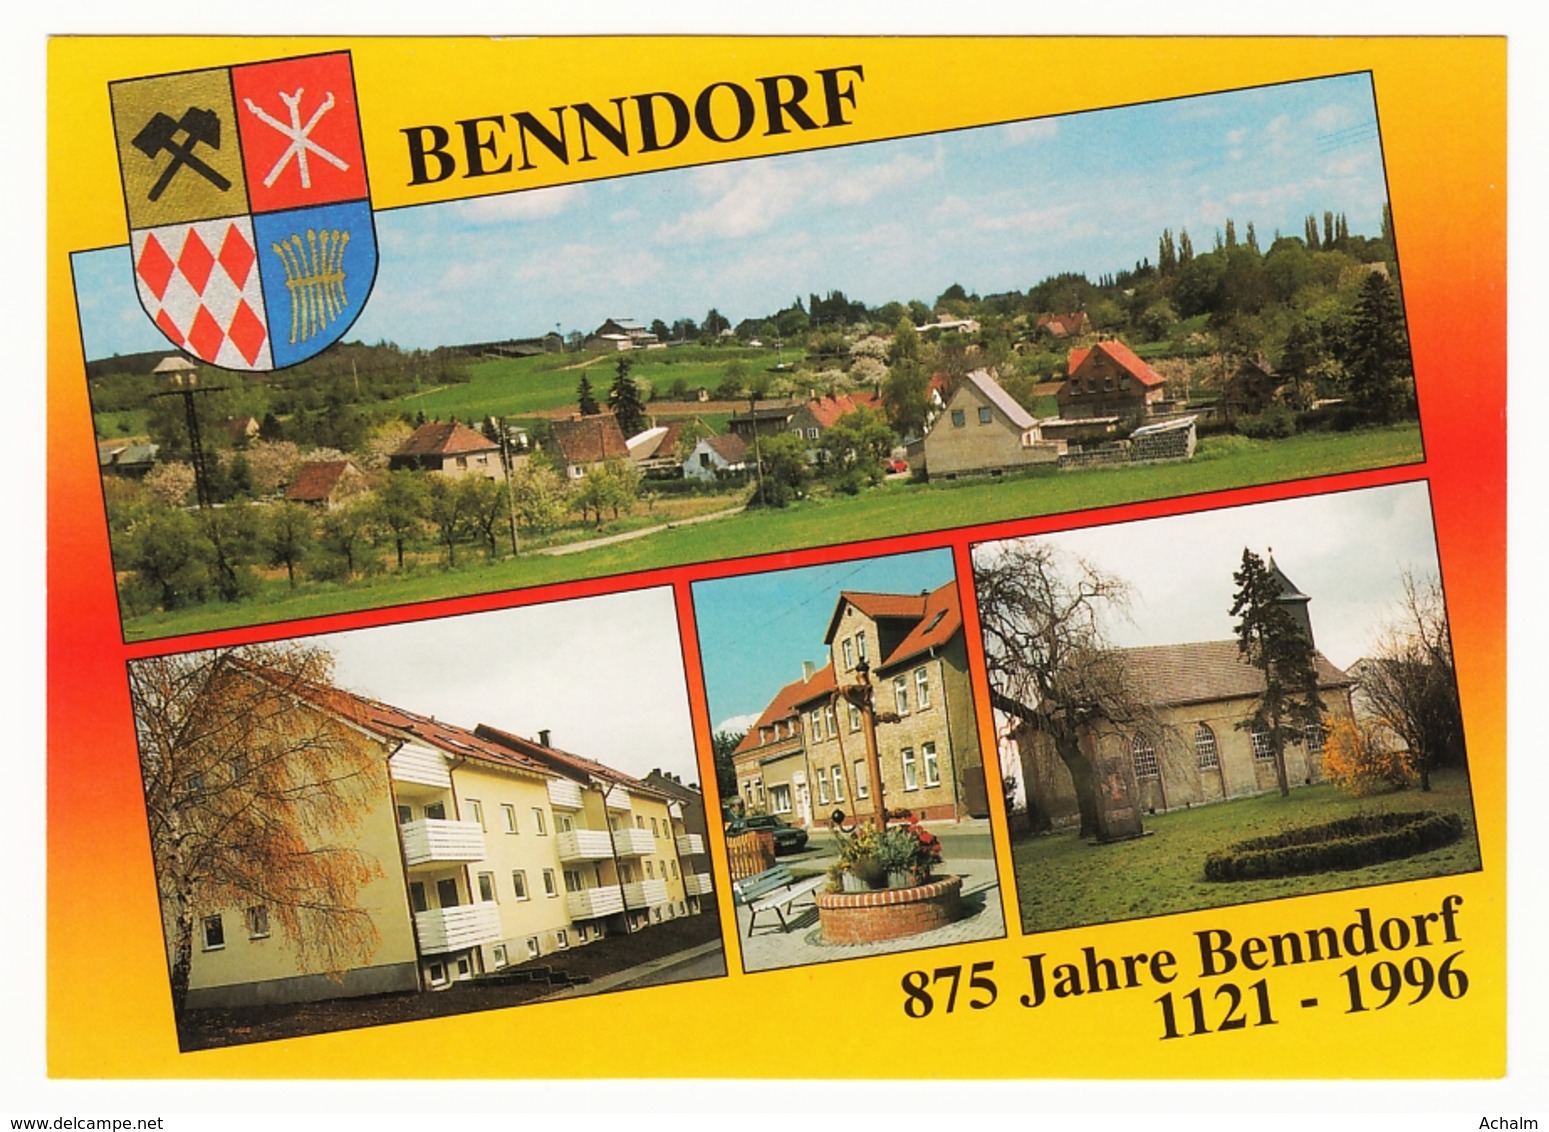 Benndorf - 875 Jahre Benndorf - Lkr. Mansfeld-Südharz - 4 Ansichten - Mansfeld